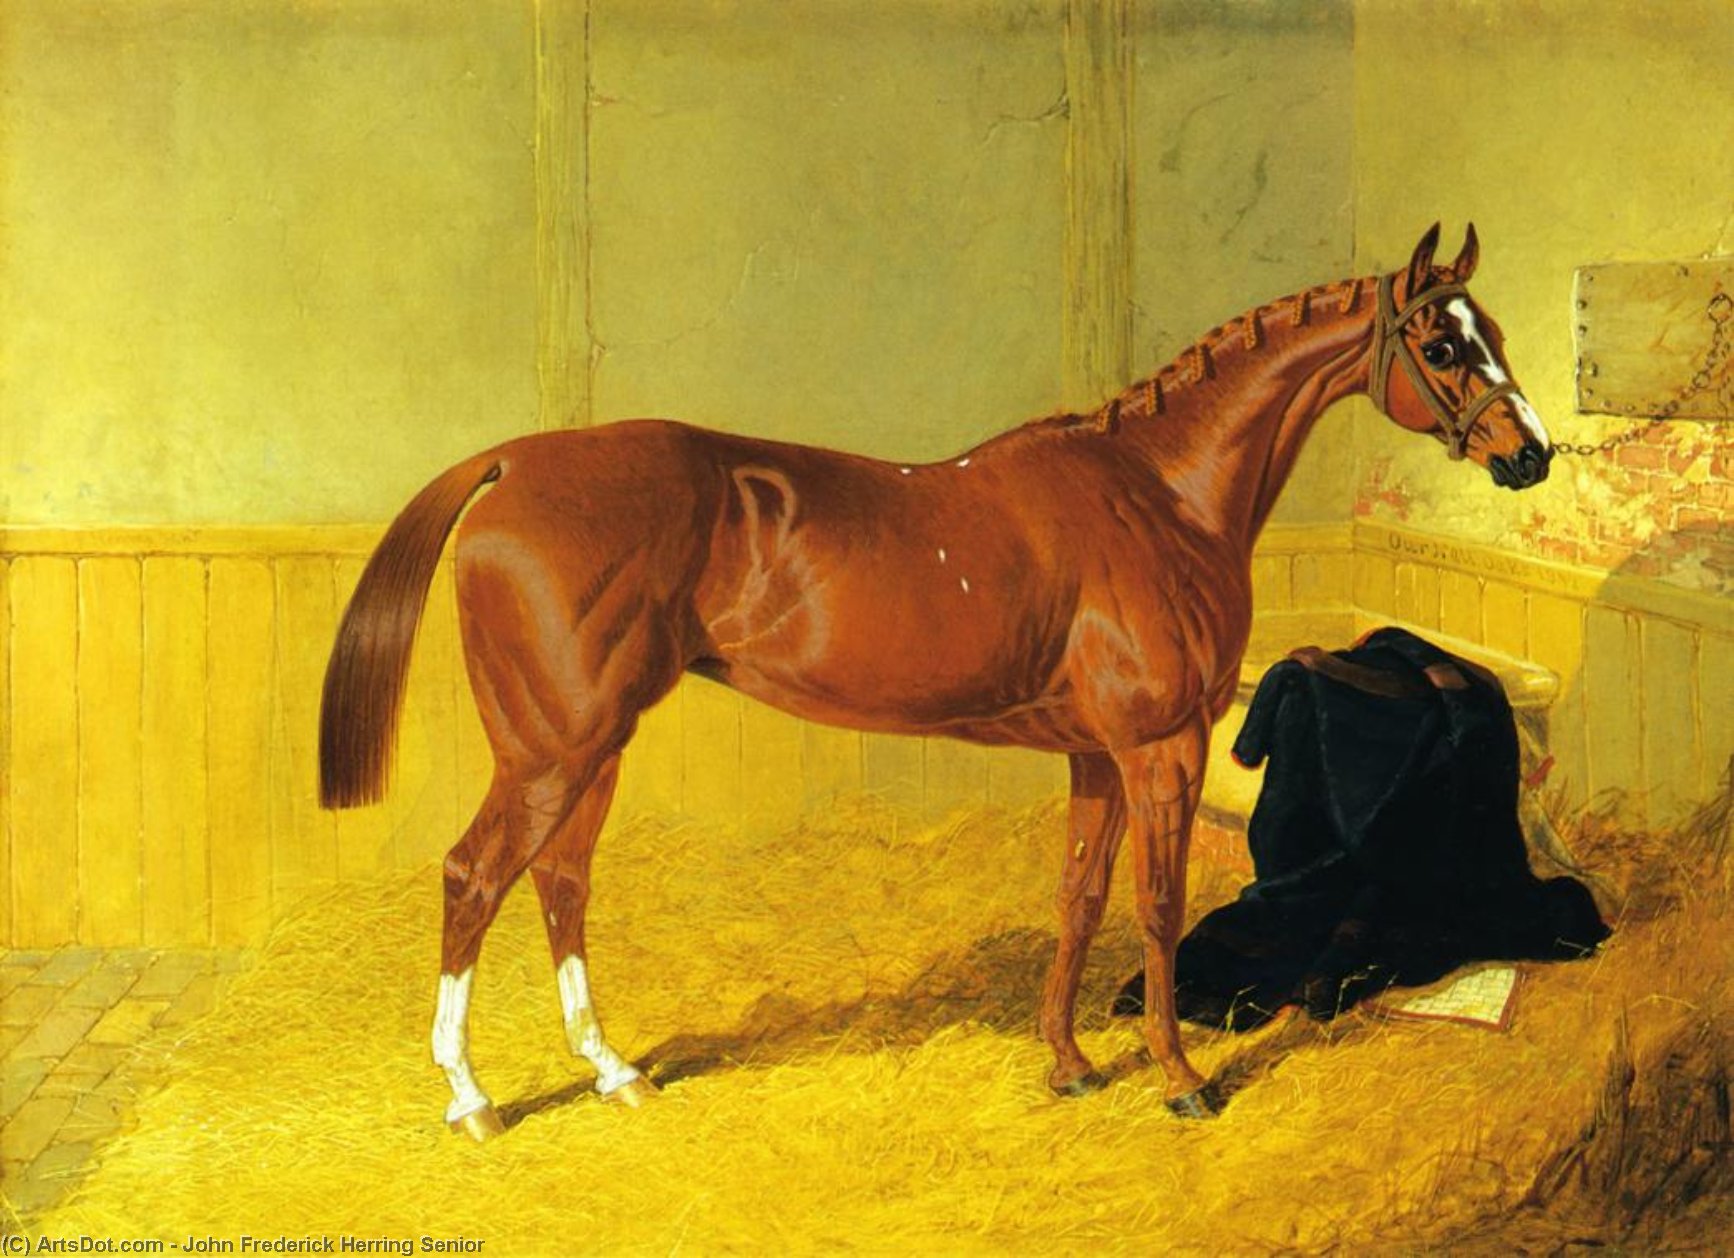 Wikioo.org - Bách khoa toàn thư về mỹ thuật - Vẽ tranh, Tác phẩm nghệ thuật John Frederick Herring Senior - Our Nell, A Bay Racehorse in a Stable